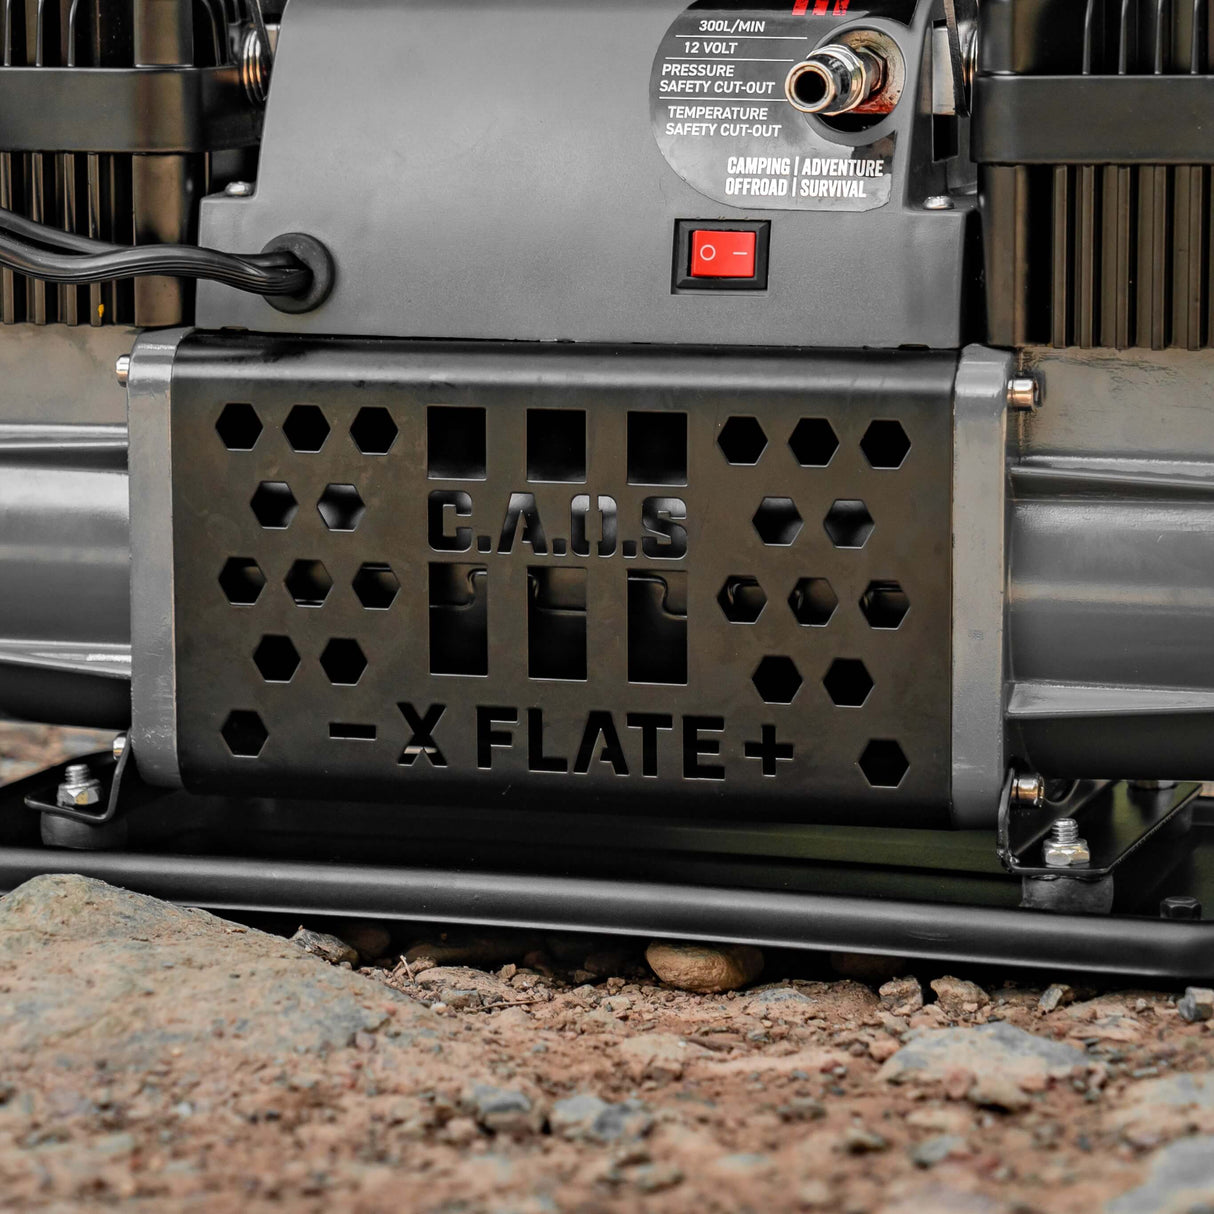 CAOS X-FLATE Air Compressor + BONUS Compressor Bag